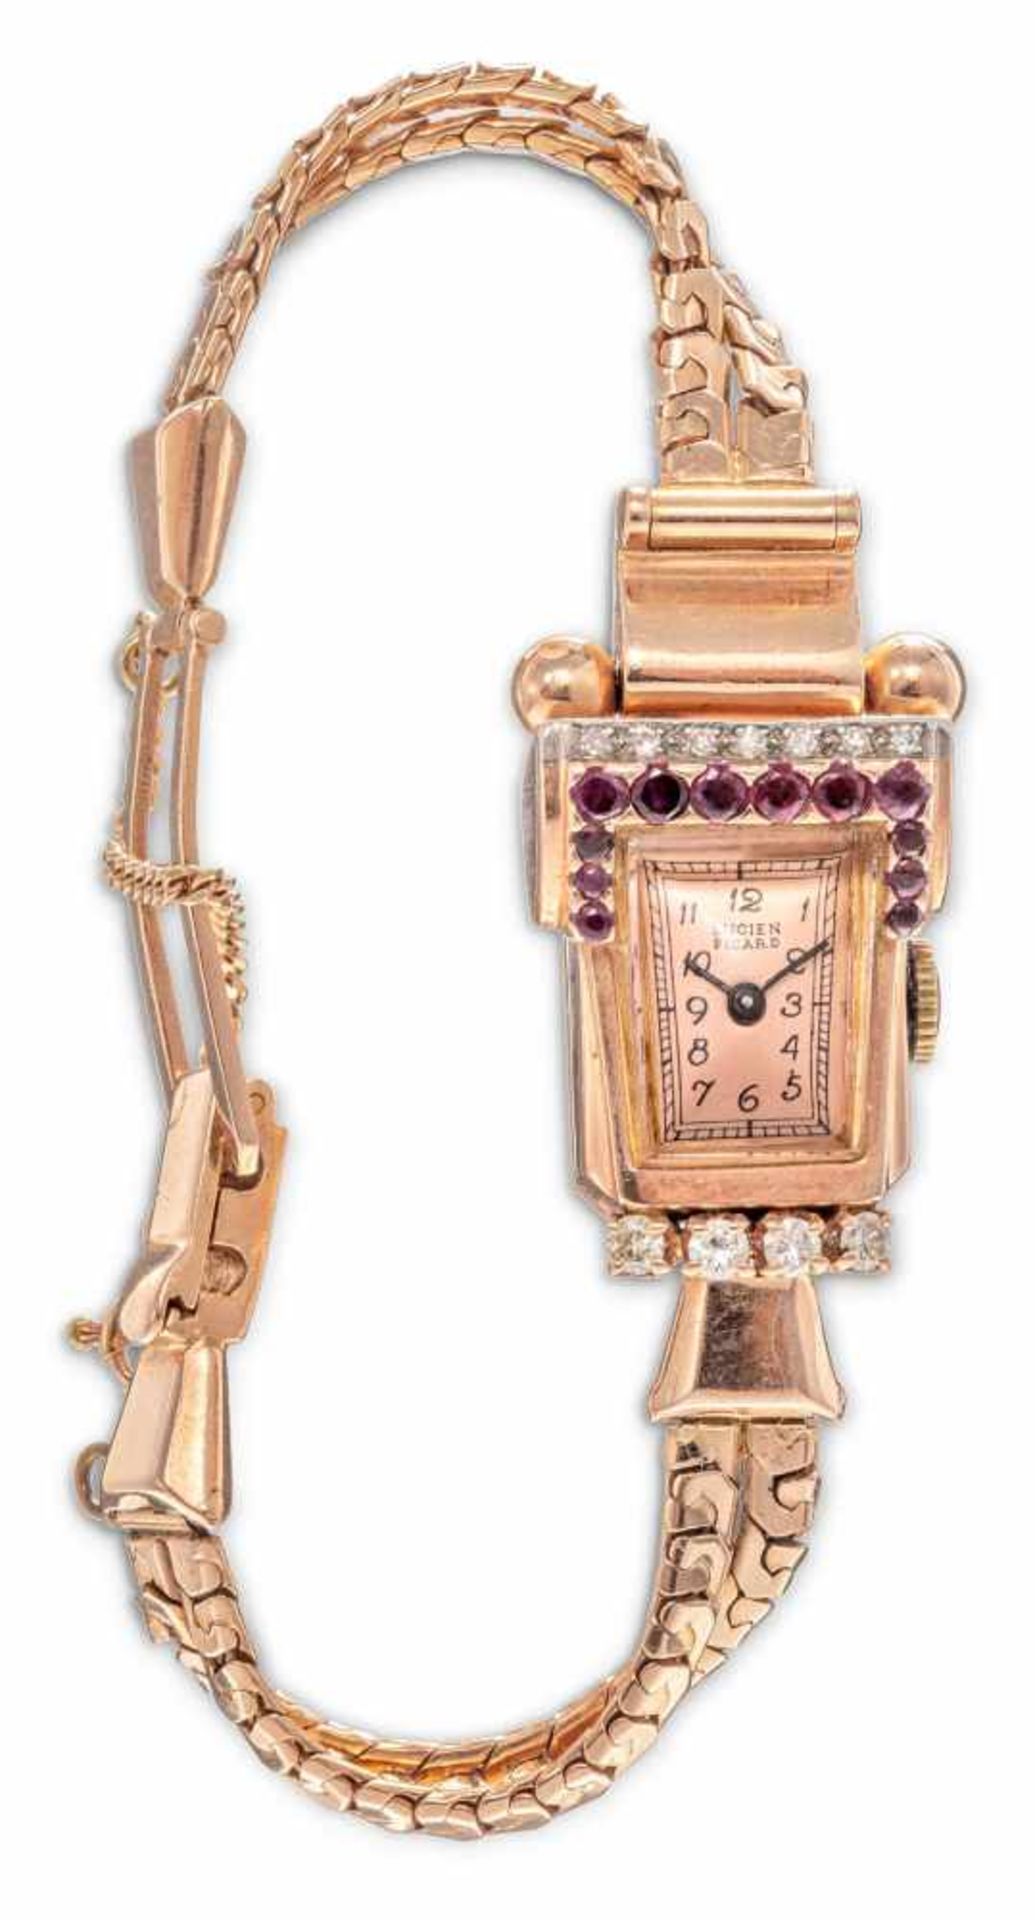 Vintage-Lucien-Picard-Armbanduhr50er Jahre. 585/f. Rotgold, Diamanten und Rubine. Trapezförmig,